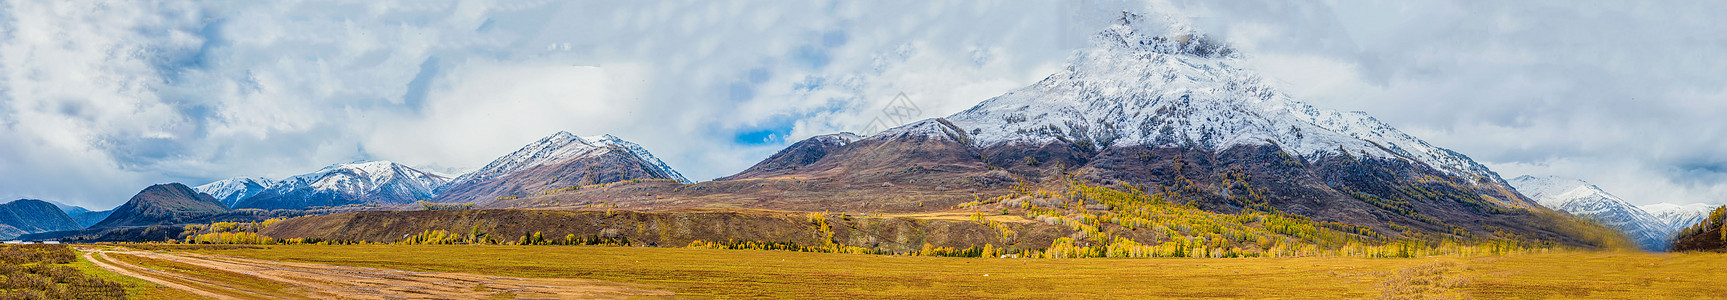 雪后风景北疆秋色雪山全景背景